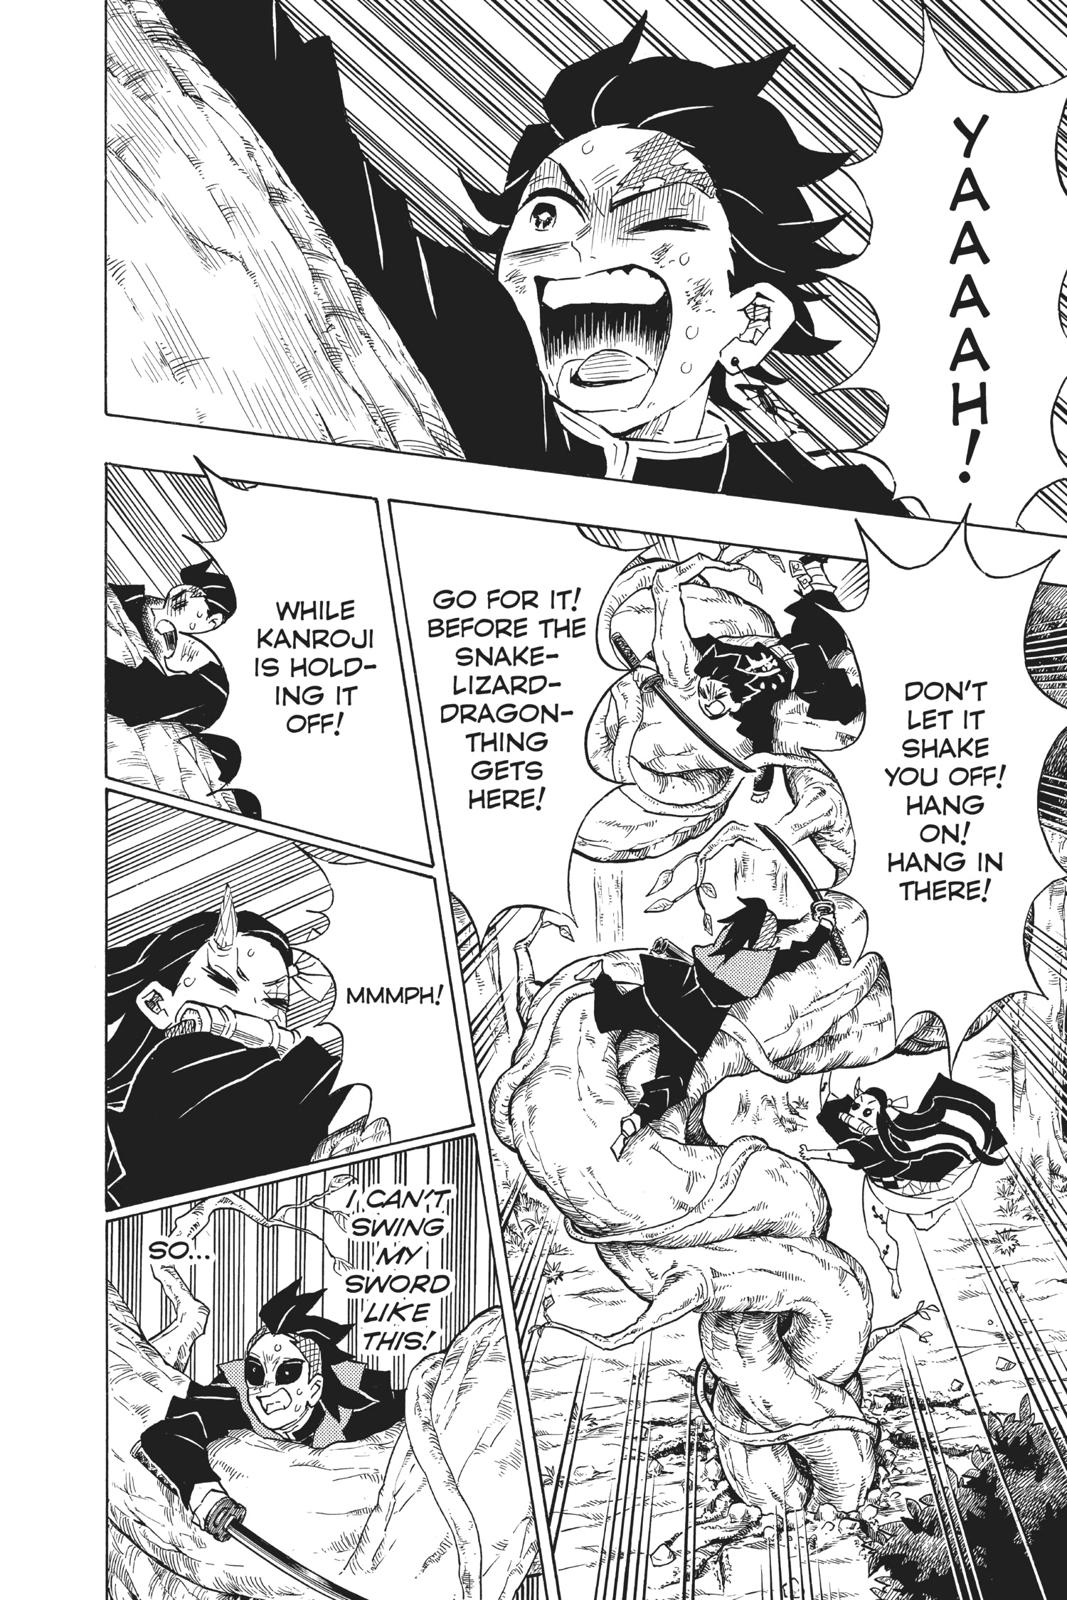 Demon Slayer Manga Manga Chapter - 124 - image 9